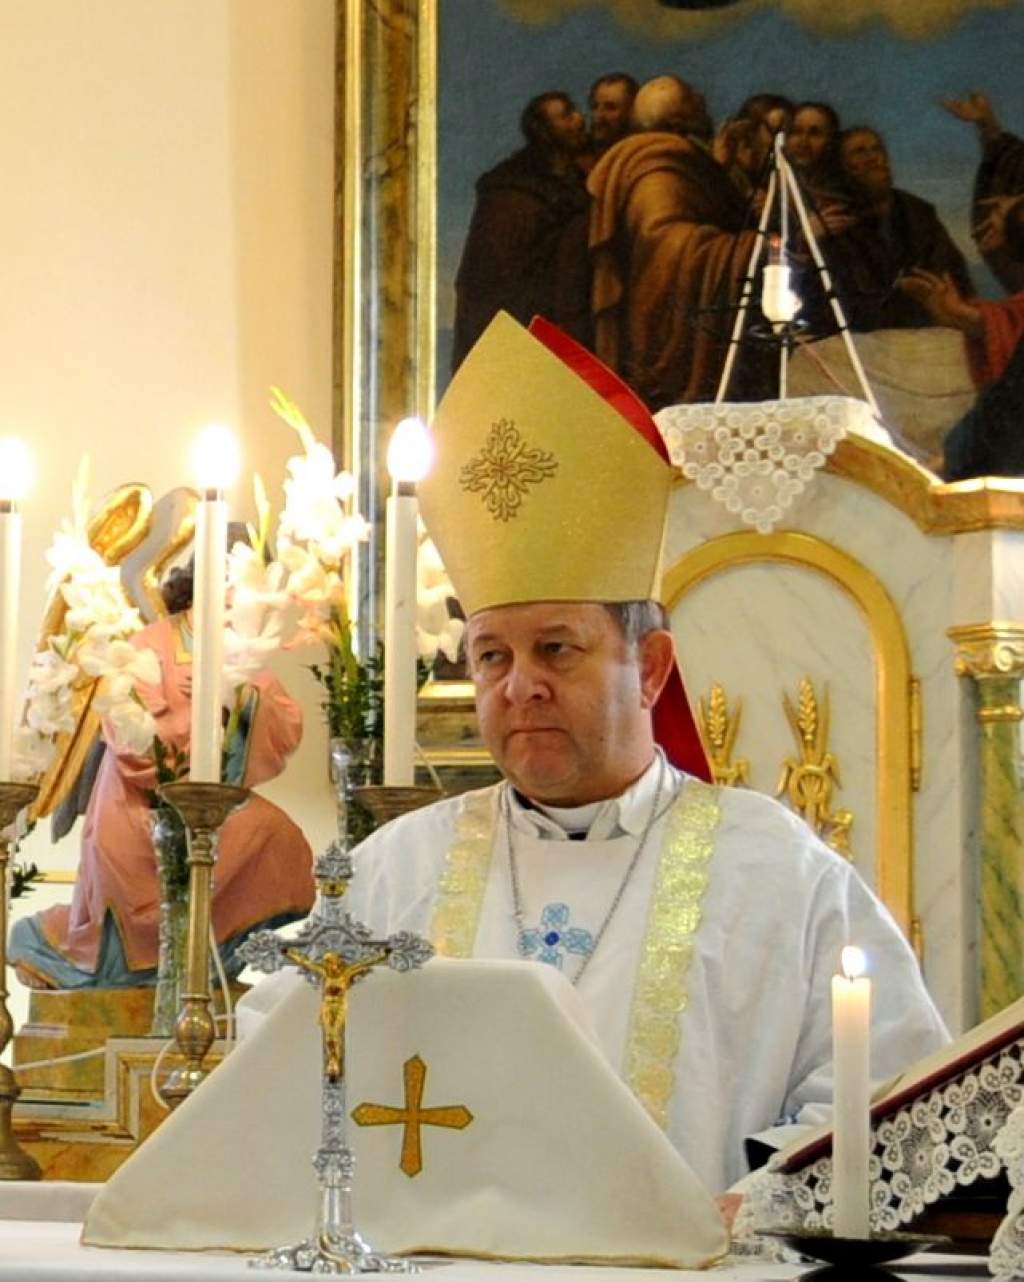 Kismányok hívő népe lelkesen fogadta Kalocsa első papját 